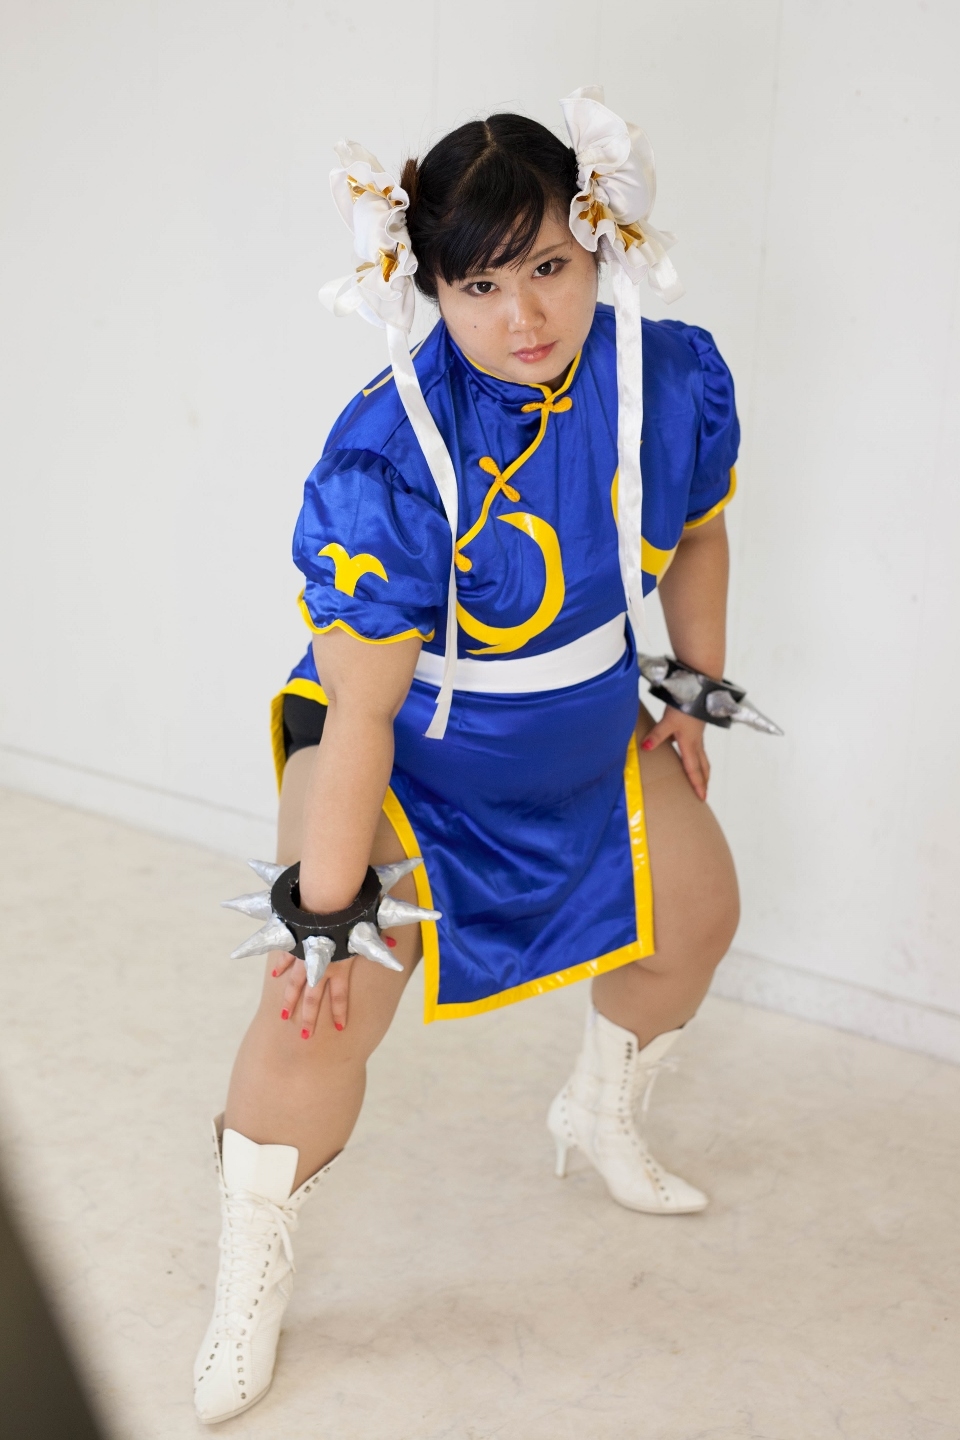 (渡辺さくらん) FIGHT FAT LADY (Sakuran Watanabe) (Mai Shiranui - Fatal Fury) (Chun-Li - Street Fighter) 106